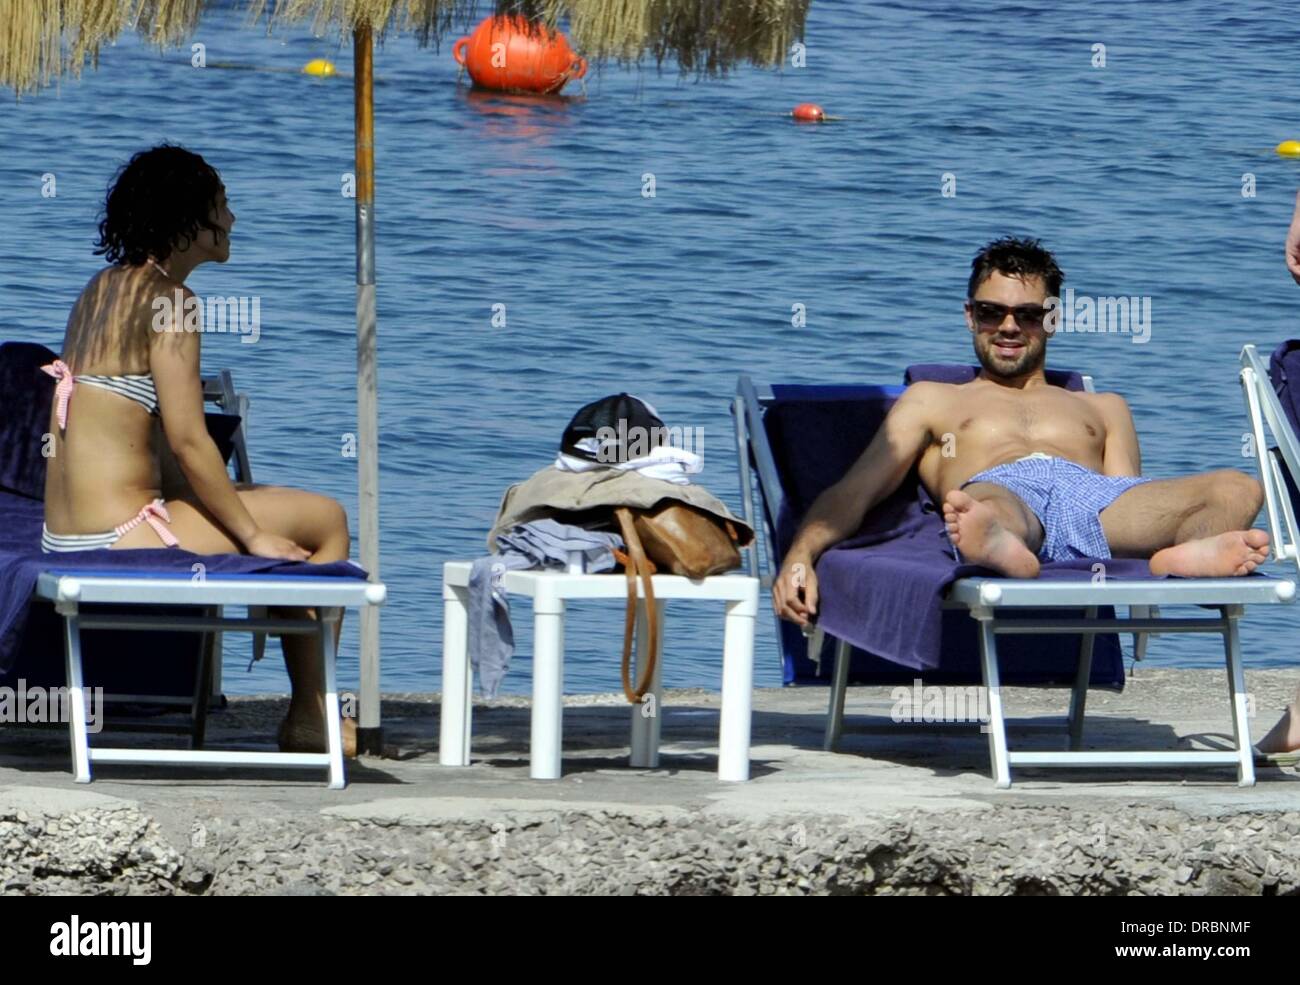 Dominic Cooper und seine Freundin Ruth Negga Sonnenbaden und genießen Sie einen Urlaub in Ischia Ischia, Italien - 11.07.12 Stockfoto